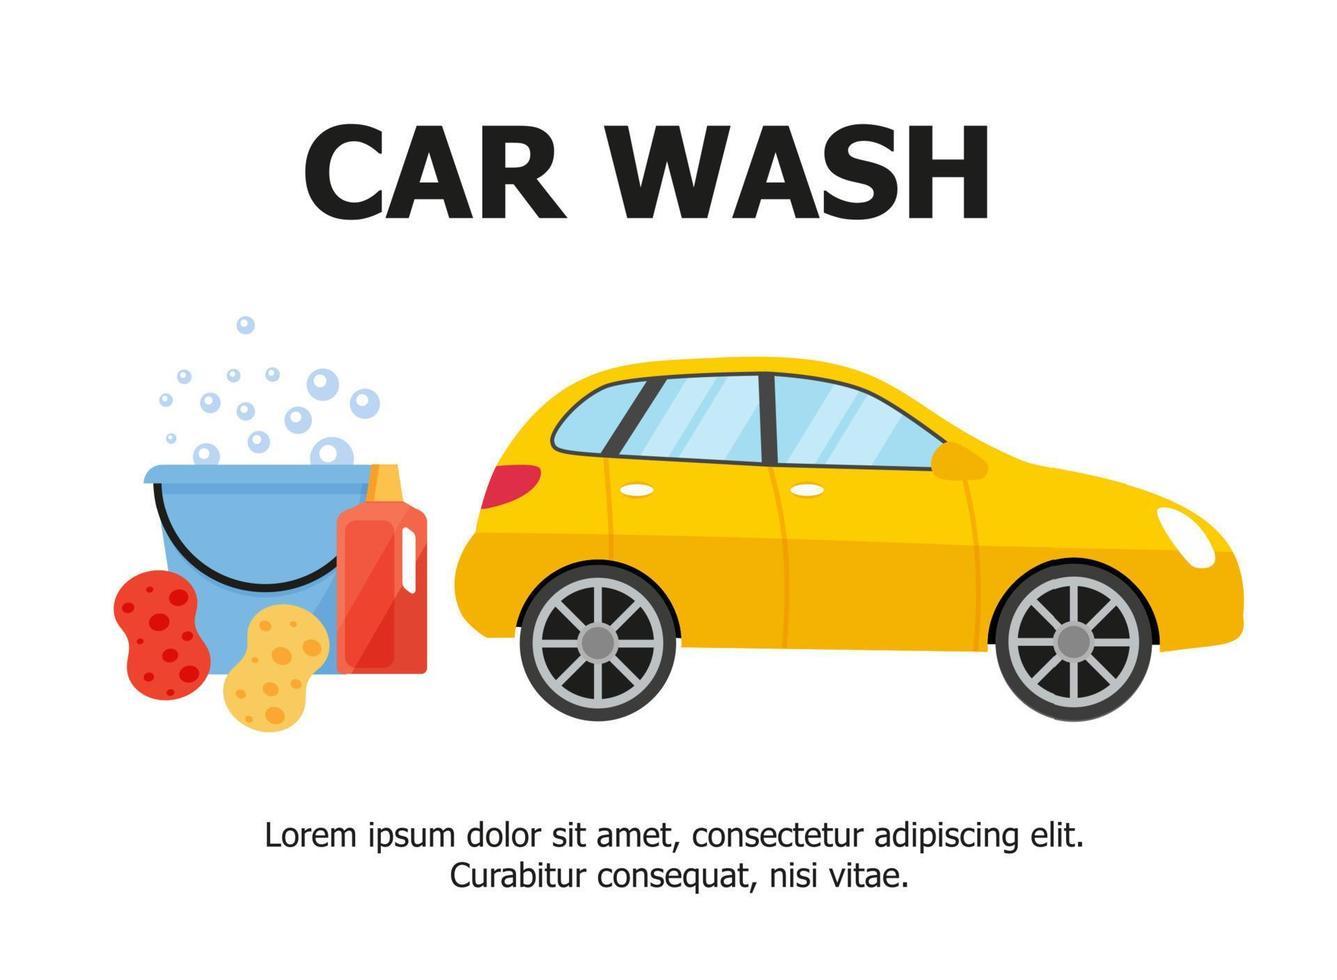 serviço de lavagem de carros. ilustrações da web em estilo simples. vetor